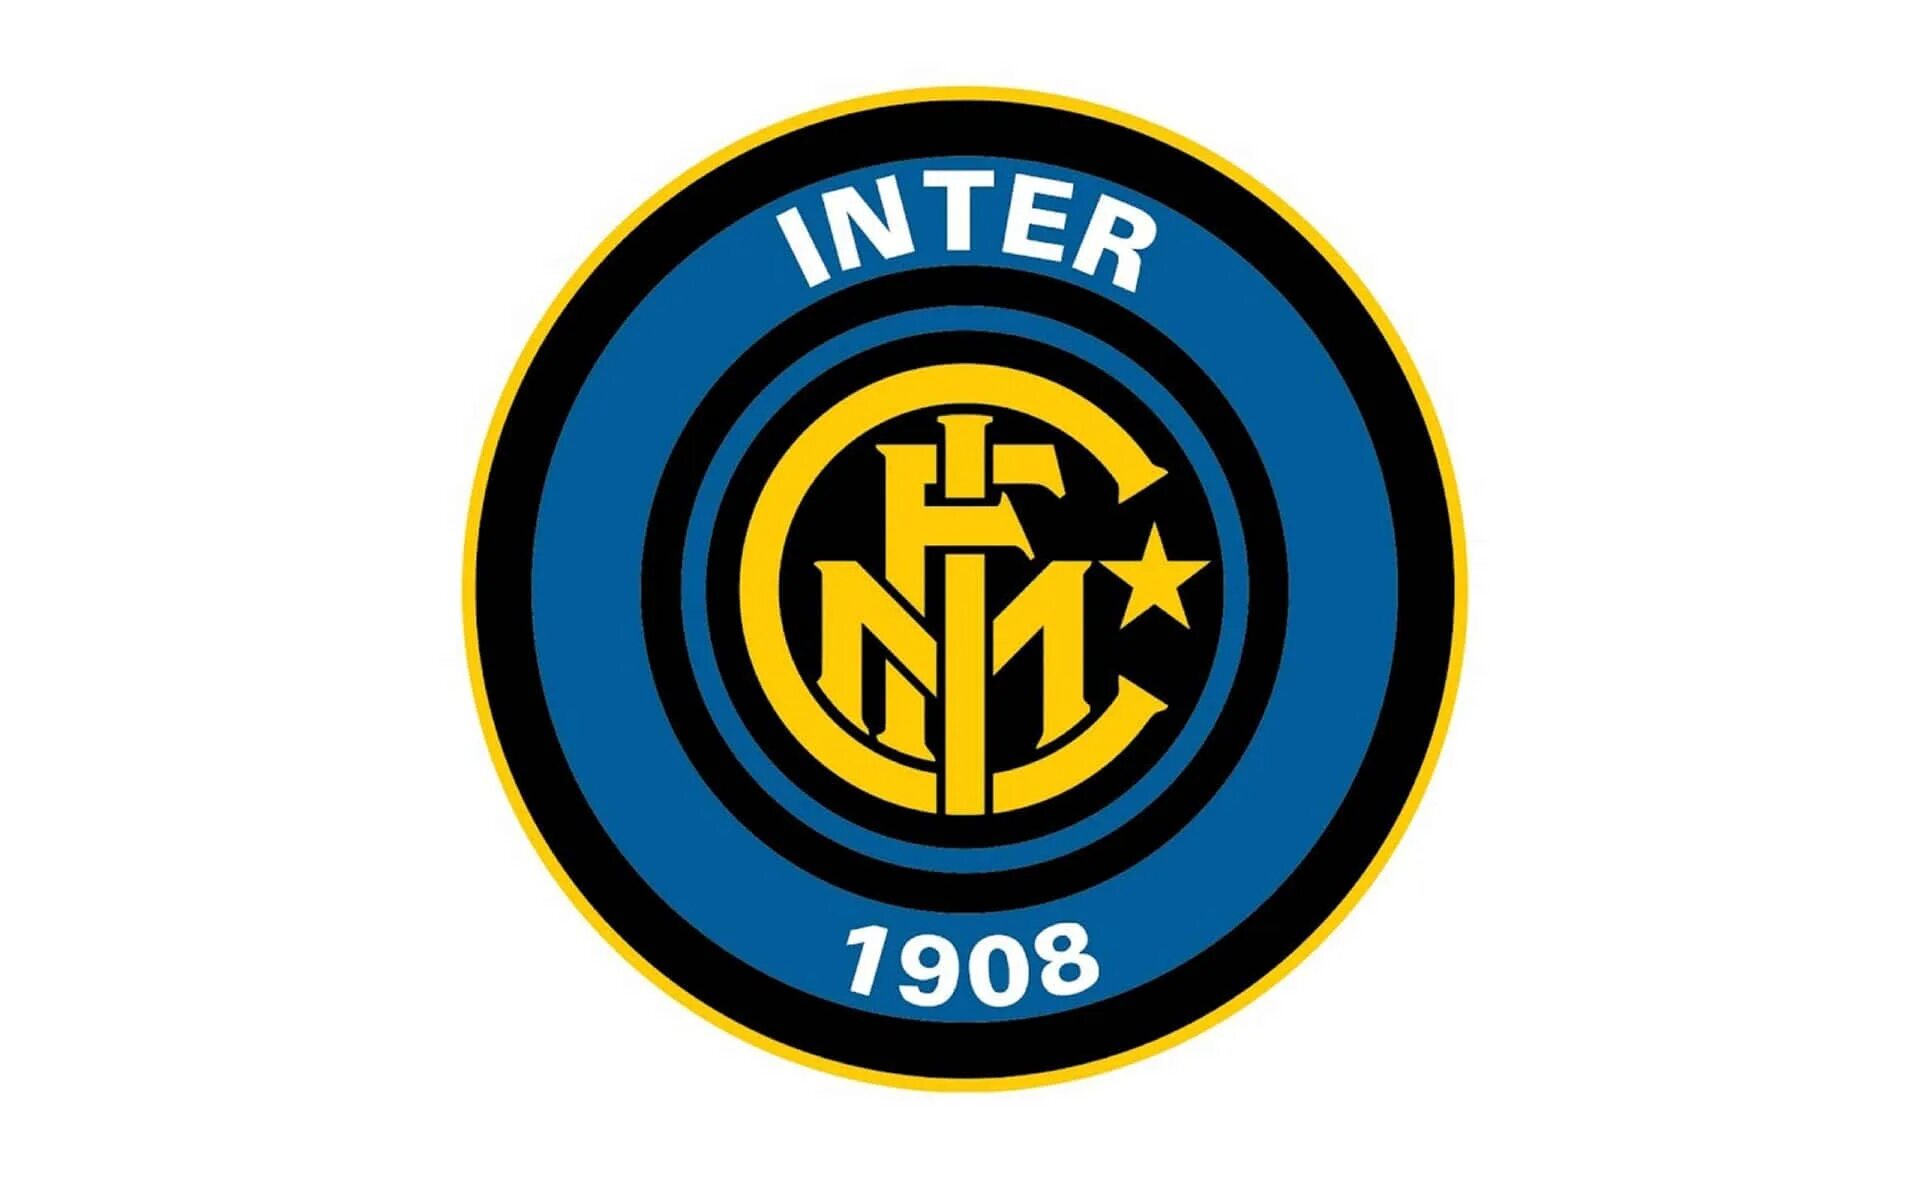 Inter me. Интер футбольный клуб эмблема.